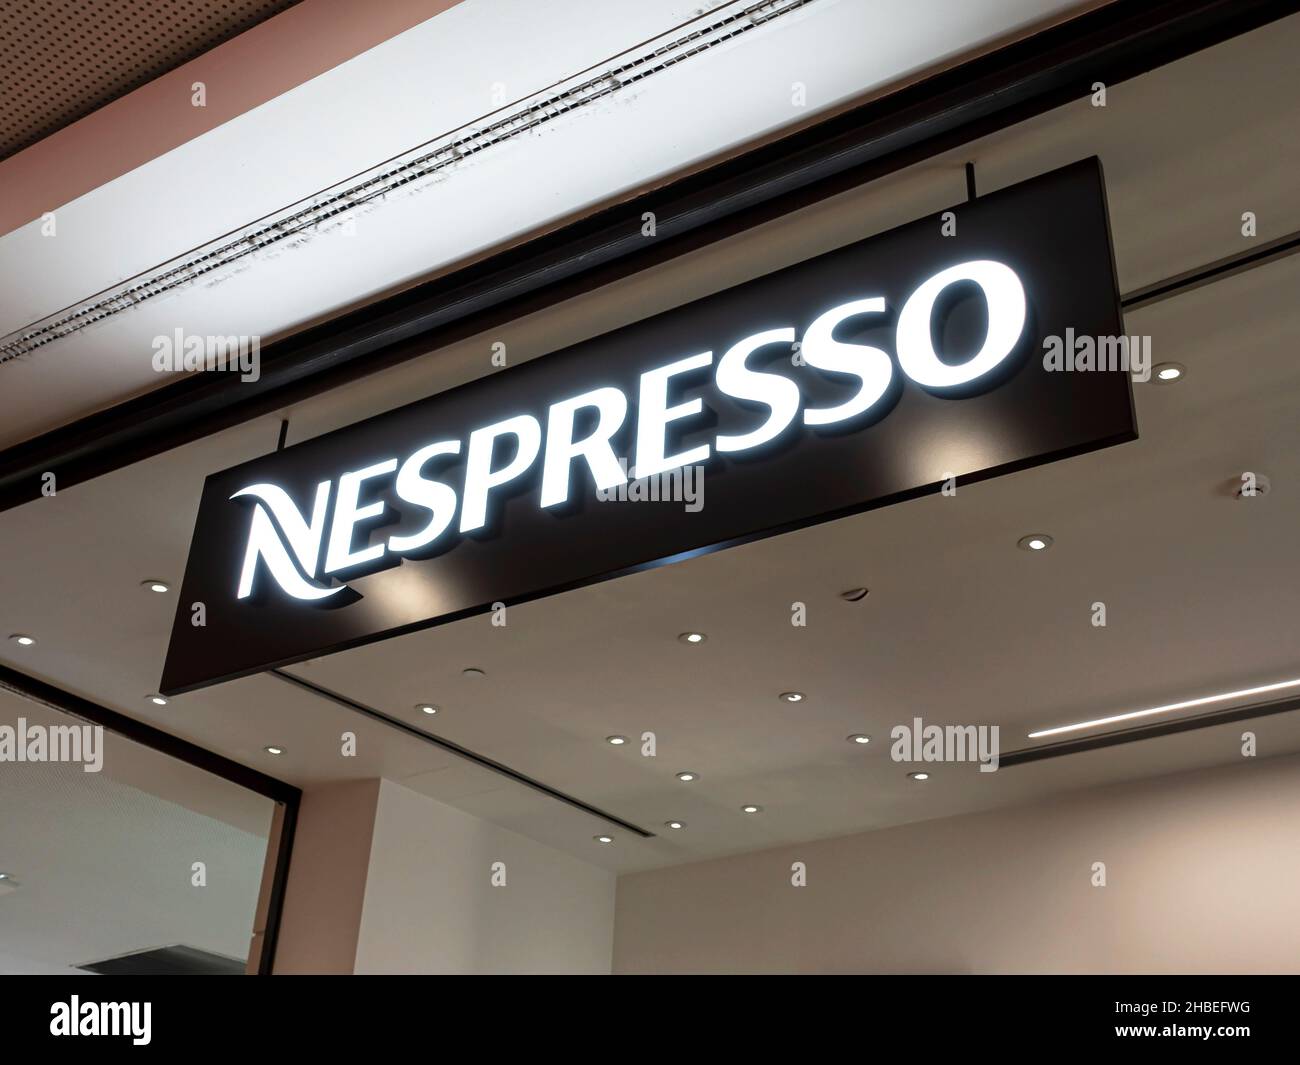 Funchal, Portugal - 23 octobre 2021 : panneau du magasin Nespresso.Nespresso est une unité opérationnelle du groupe Nestlé, basée à Lausanne, en Suisse. Banque D'Images